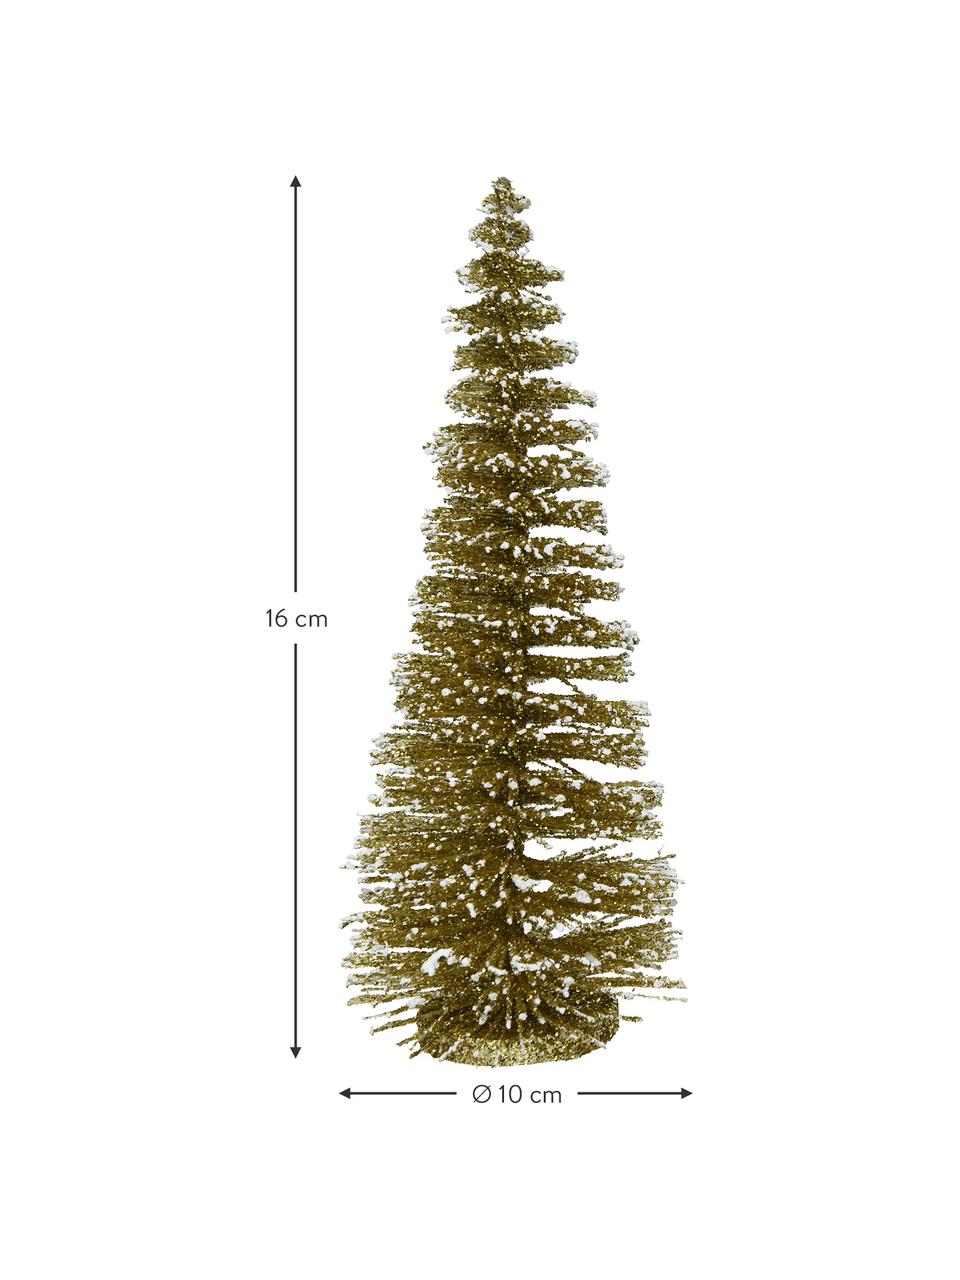 Deko-Bäume Minitree, 4 Stück, Kunststoff, Goldfarben, Ø 10 x H 16 cm